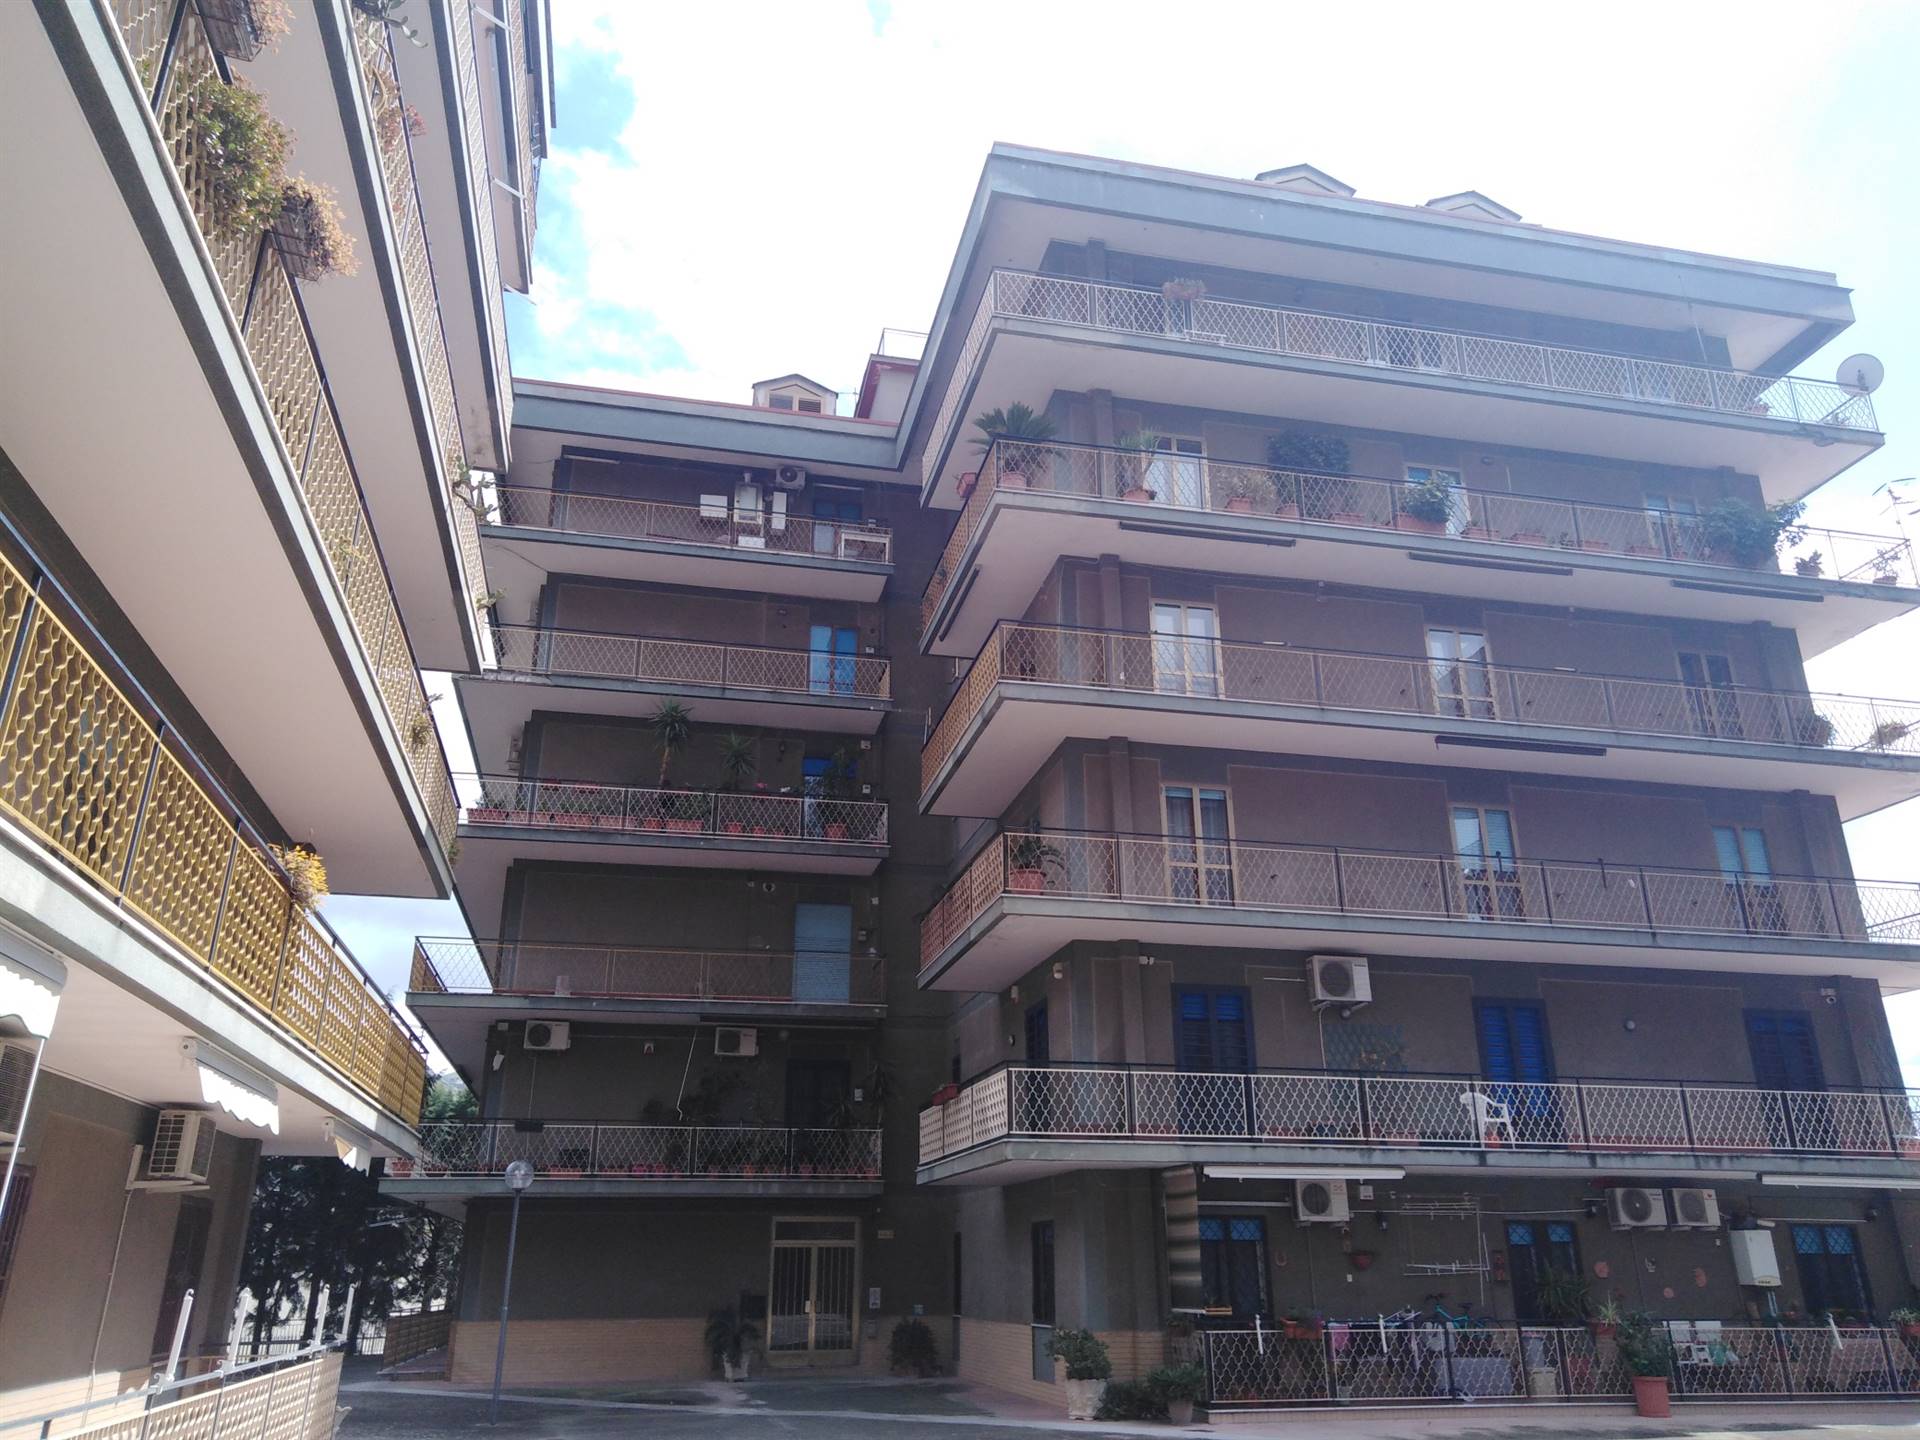 Appartamento in affitto a Caserta, 5 locali, zona Zona: Centurano, prezzo € 750 | CambioCasa.it